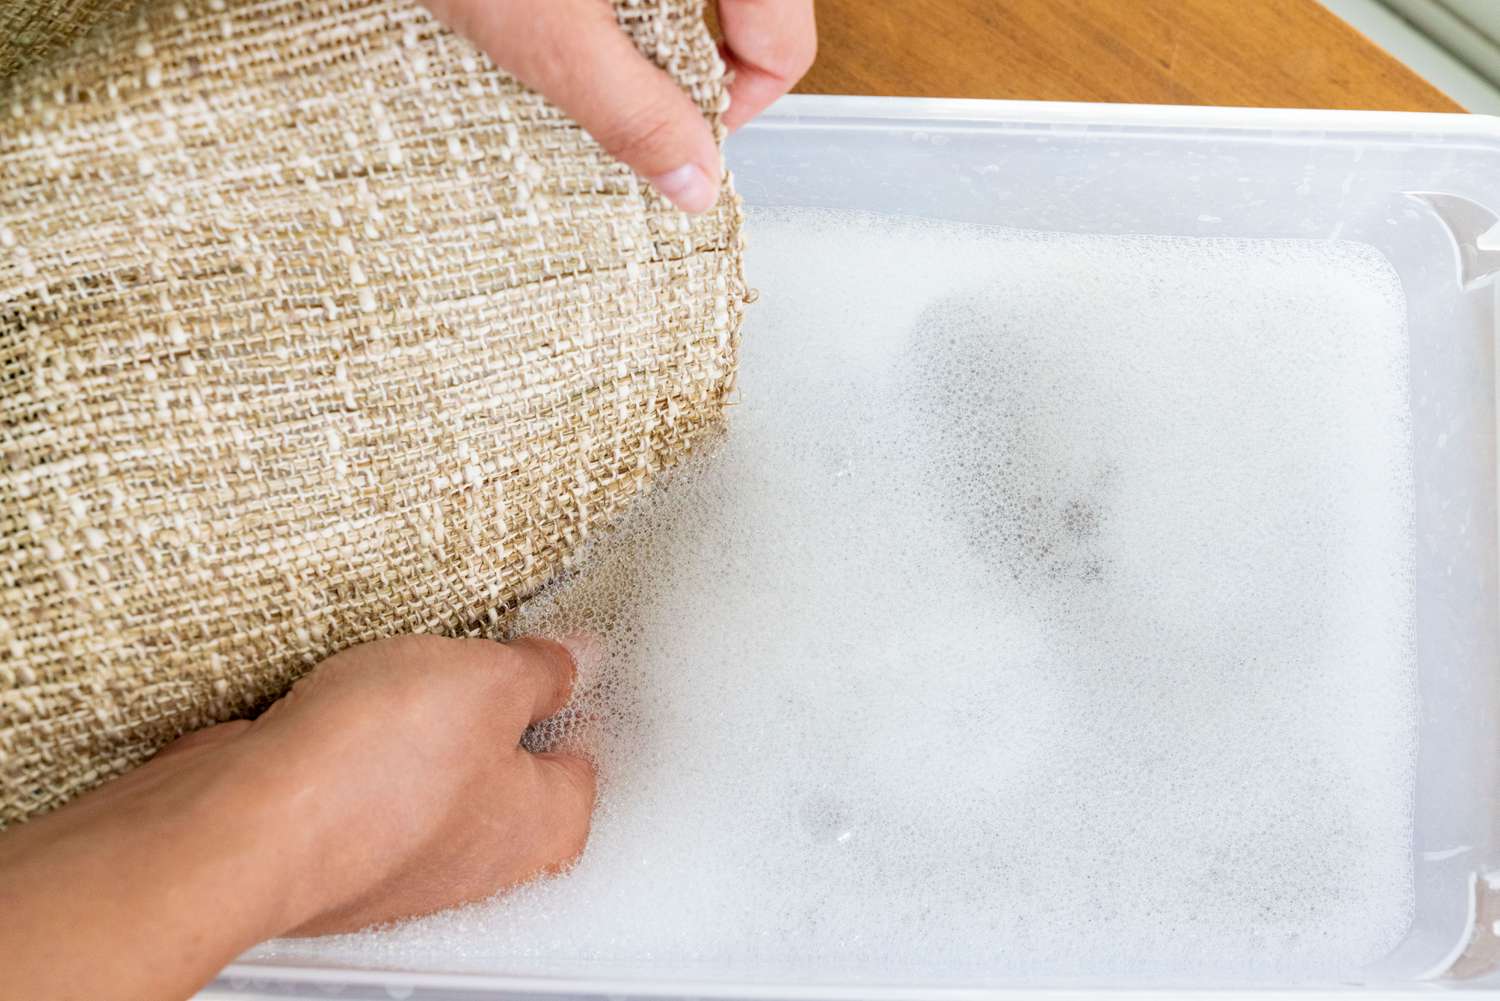 Sackleinen handgewaschen in Plastikwanne mit Seifenwasser